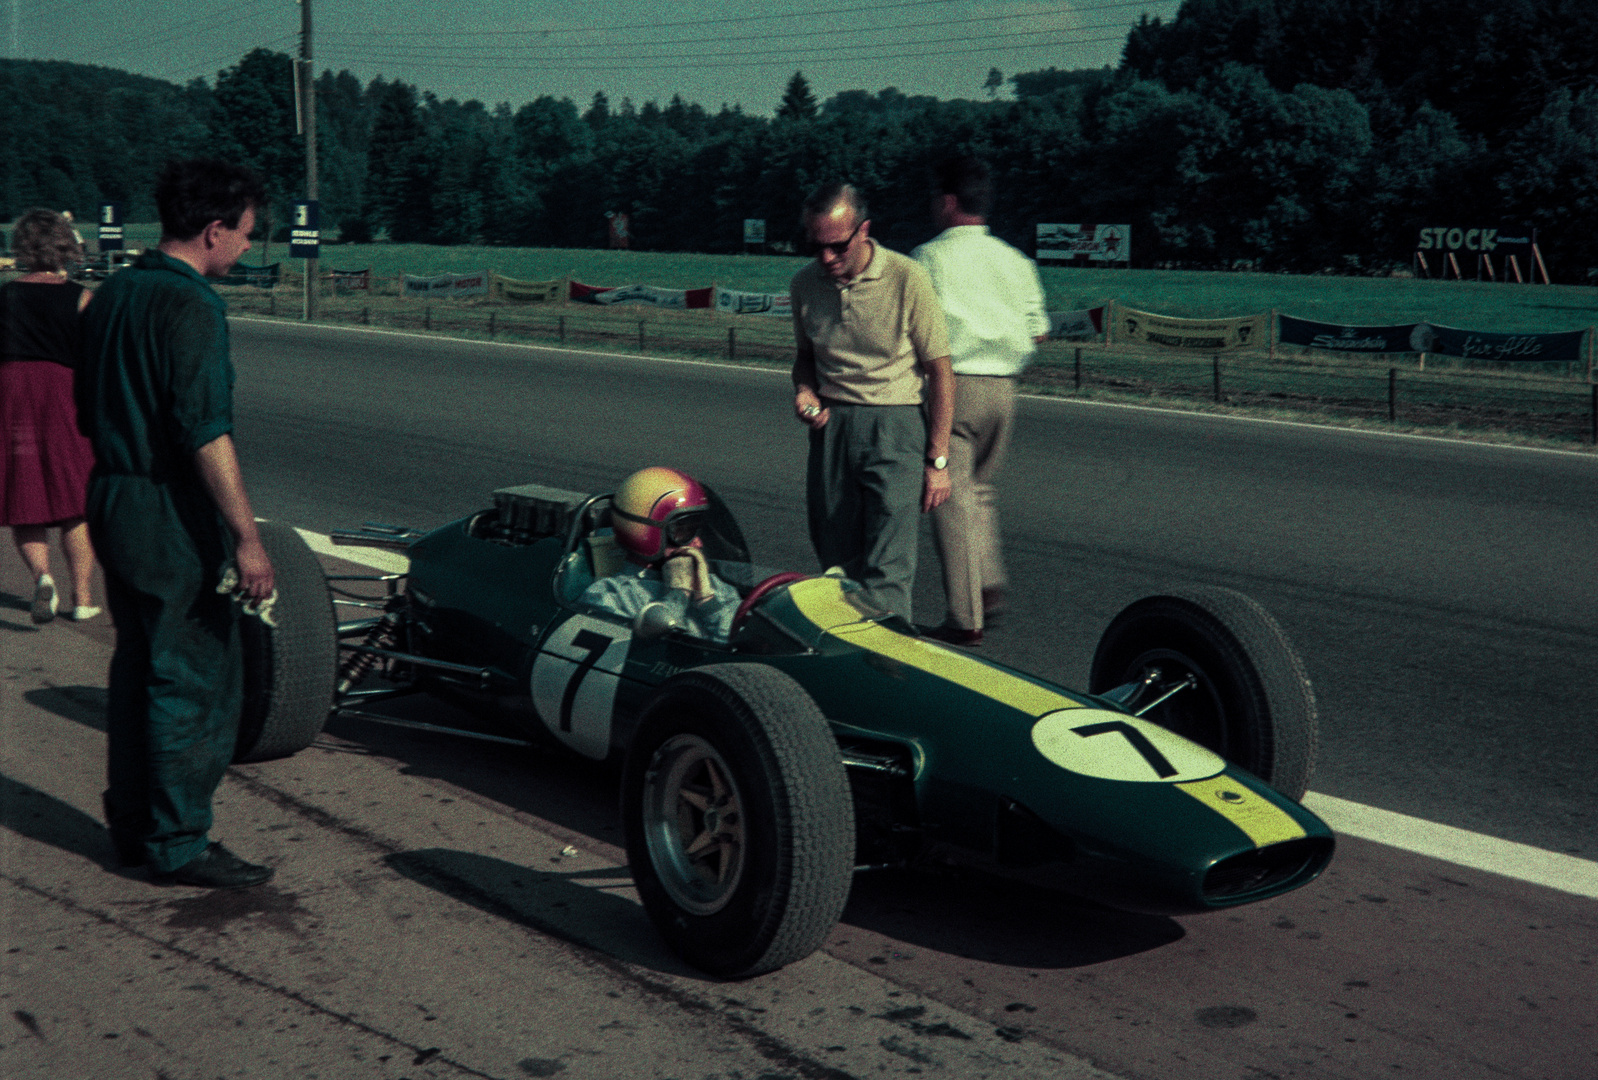 1964 letztes Formel 1-Rennen auf der Solitude